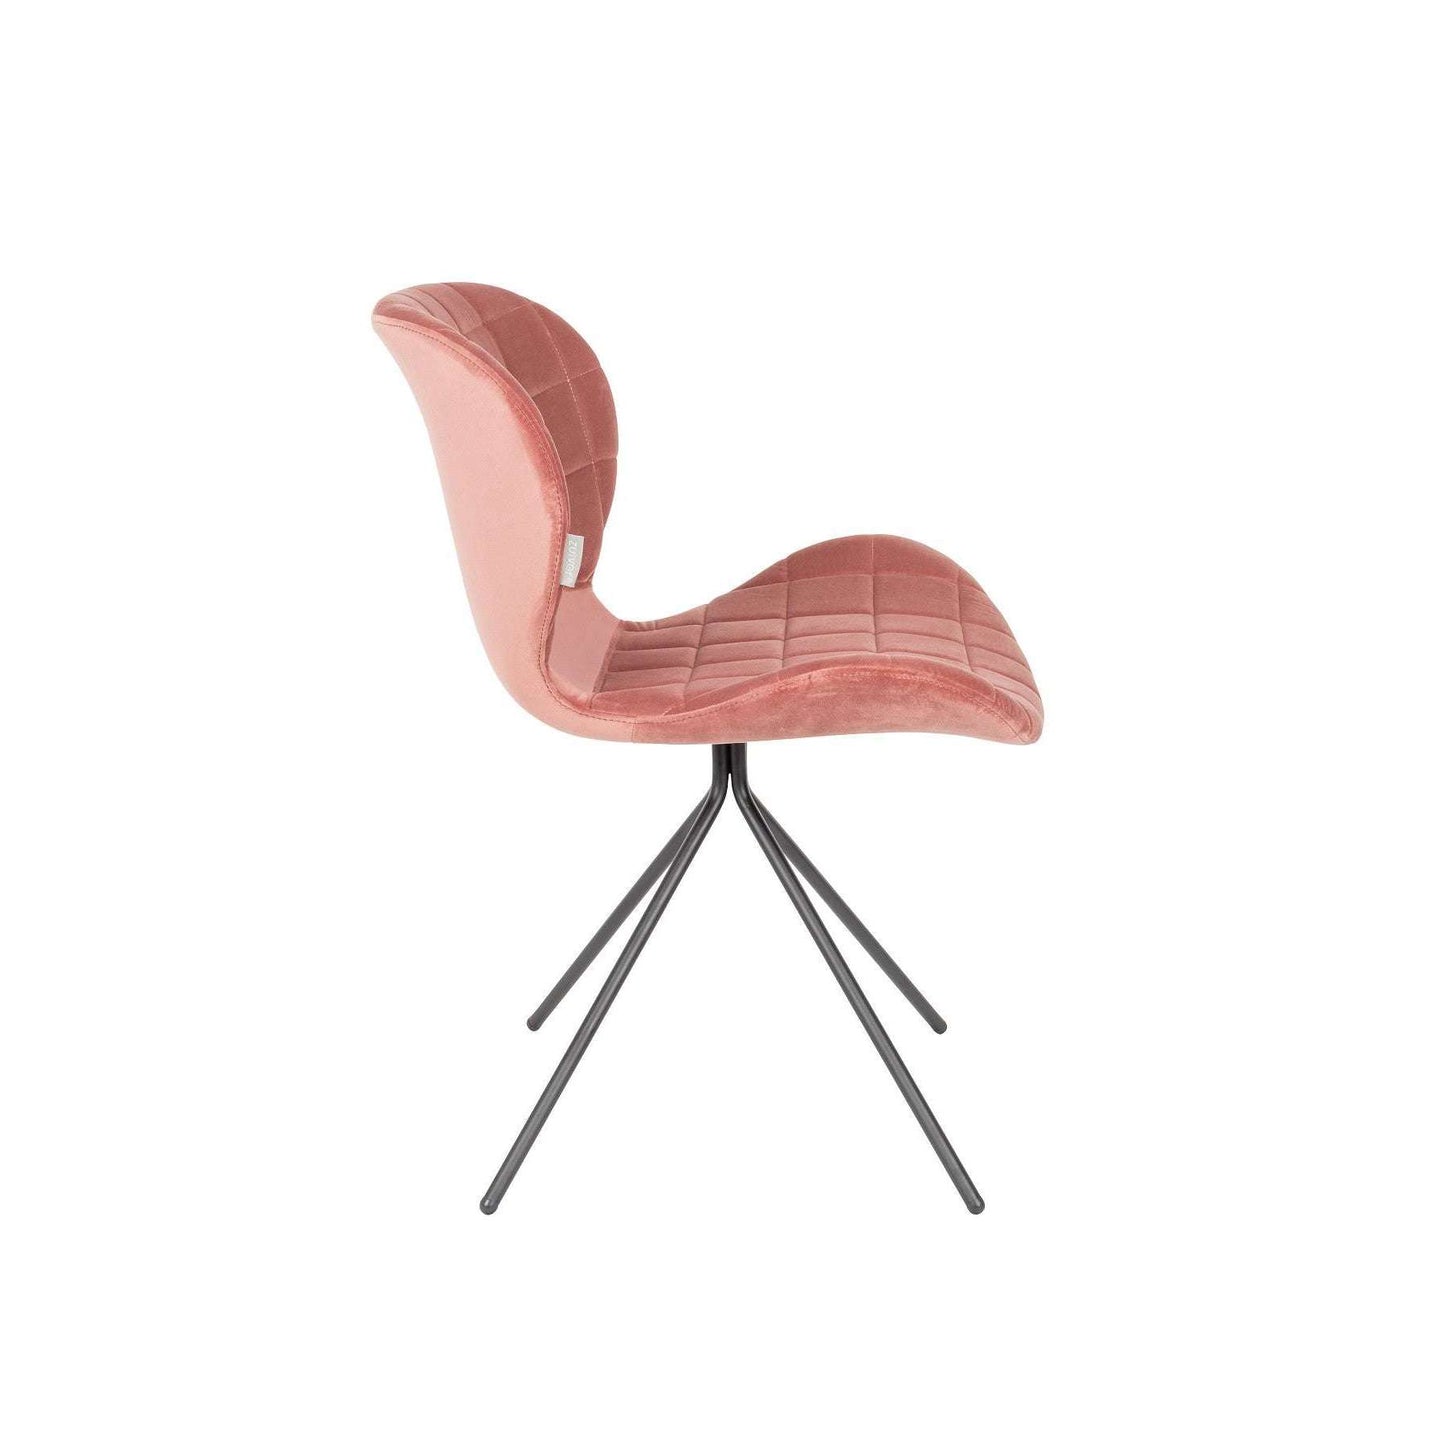 Zuiver stoel omg velvet oud roze 56 x 51 x 80 cm